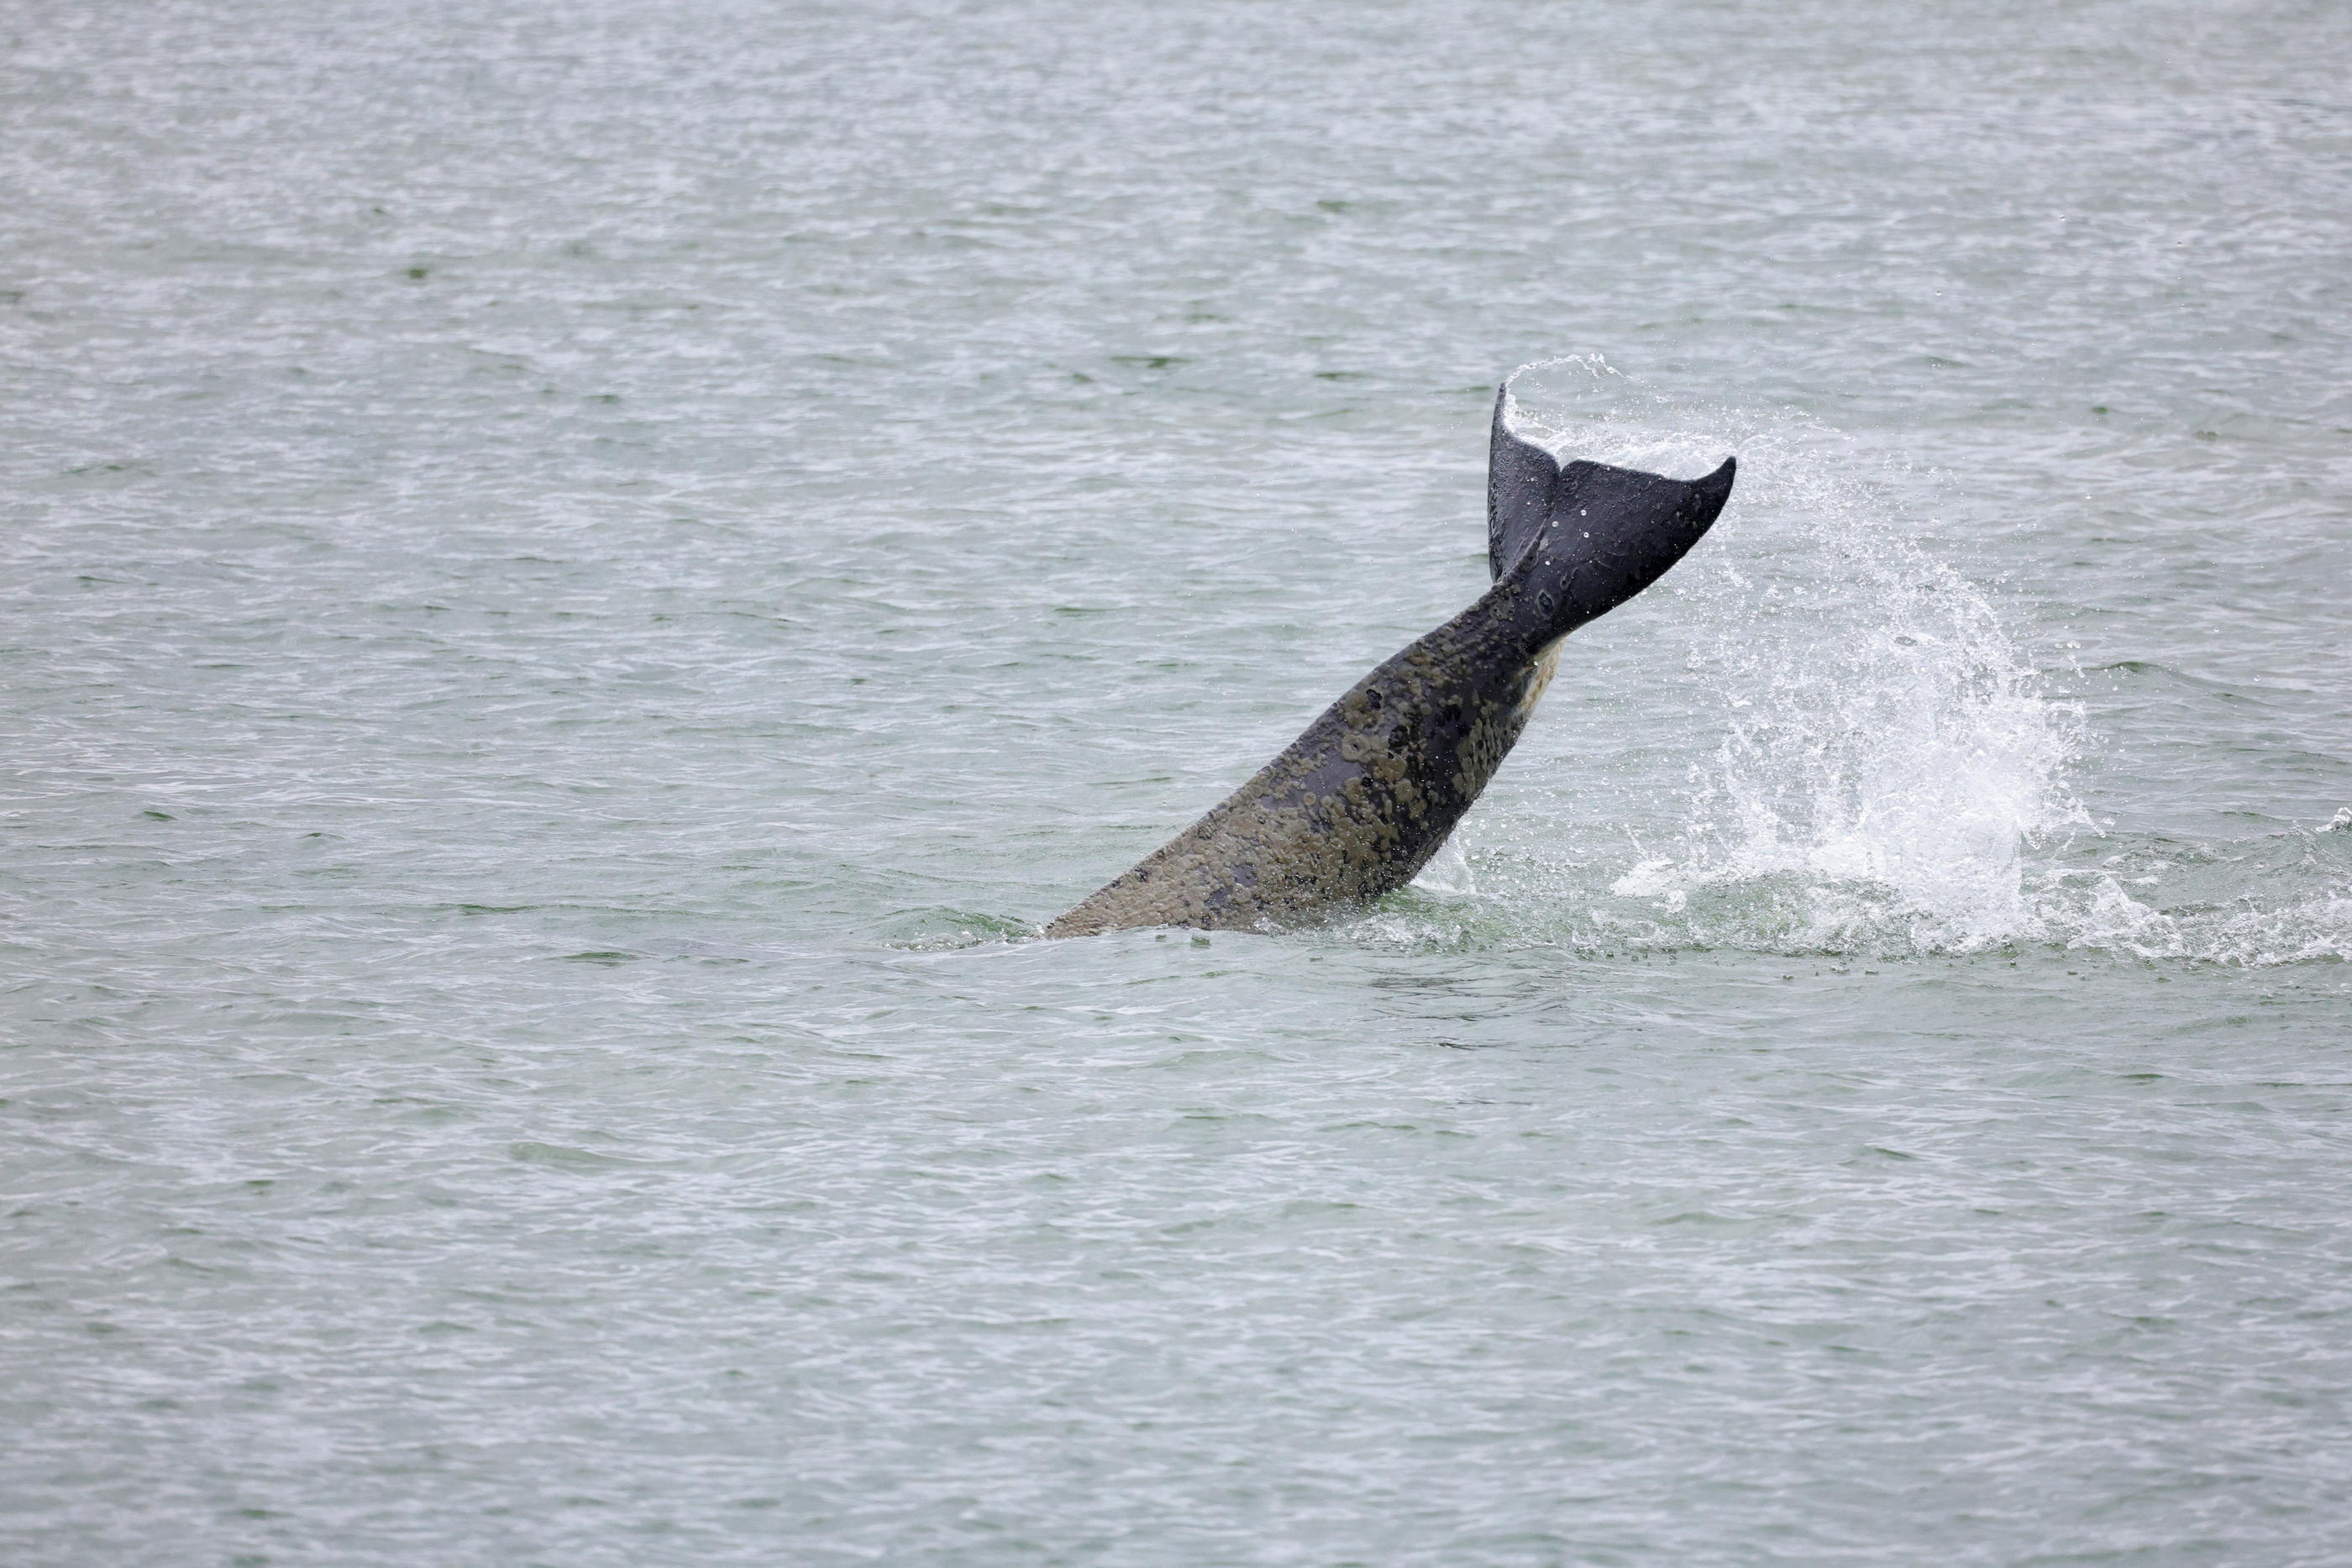 L'orque avait été retrouvée morte le 30 mai dernier, après avoir erré dans la Seine. REUTERS/Pascal Rossignol